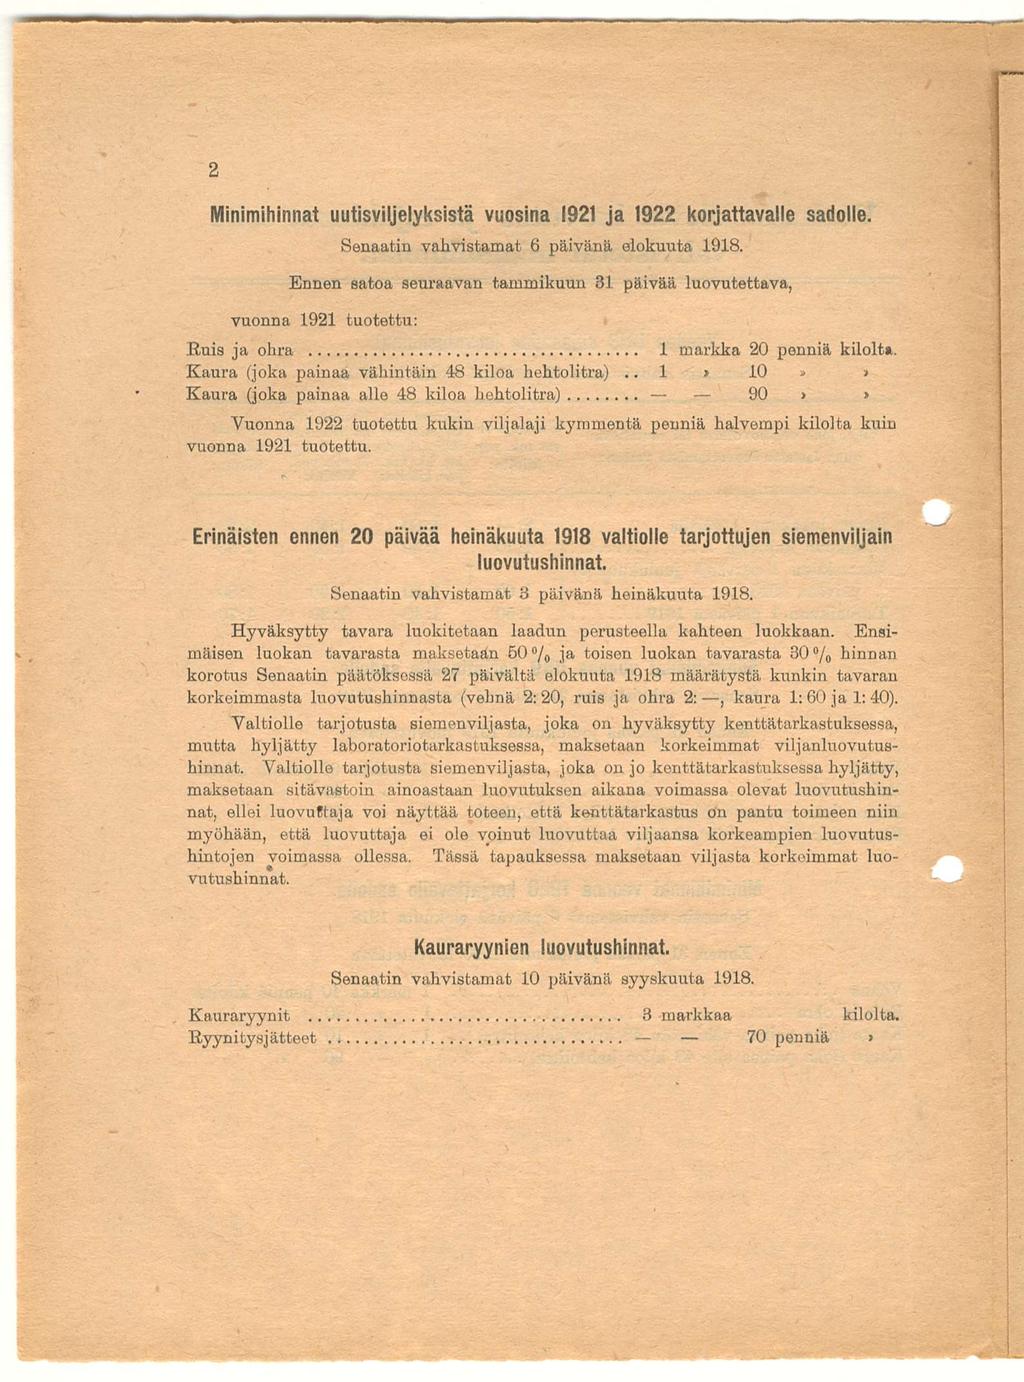 1 Minimihinnat uutisviljelyksistä vuosina 1921 ja 1922 korjattavalle sadolle. Senaatin vahvistamat 6 päivänä elokuuta 1918.